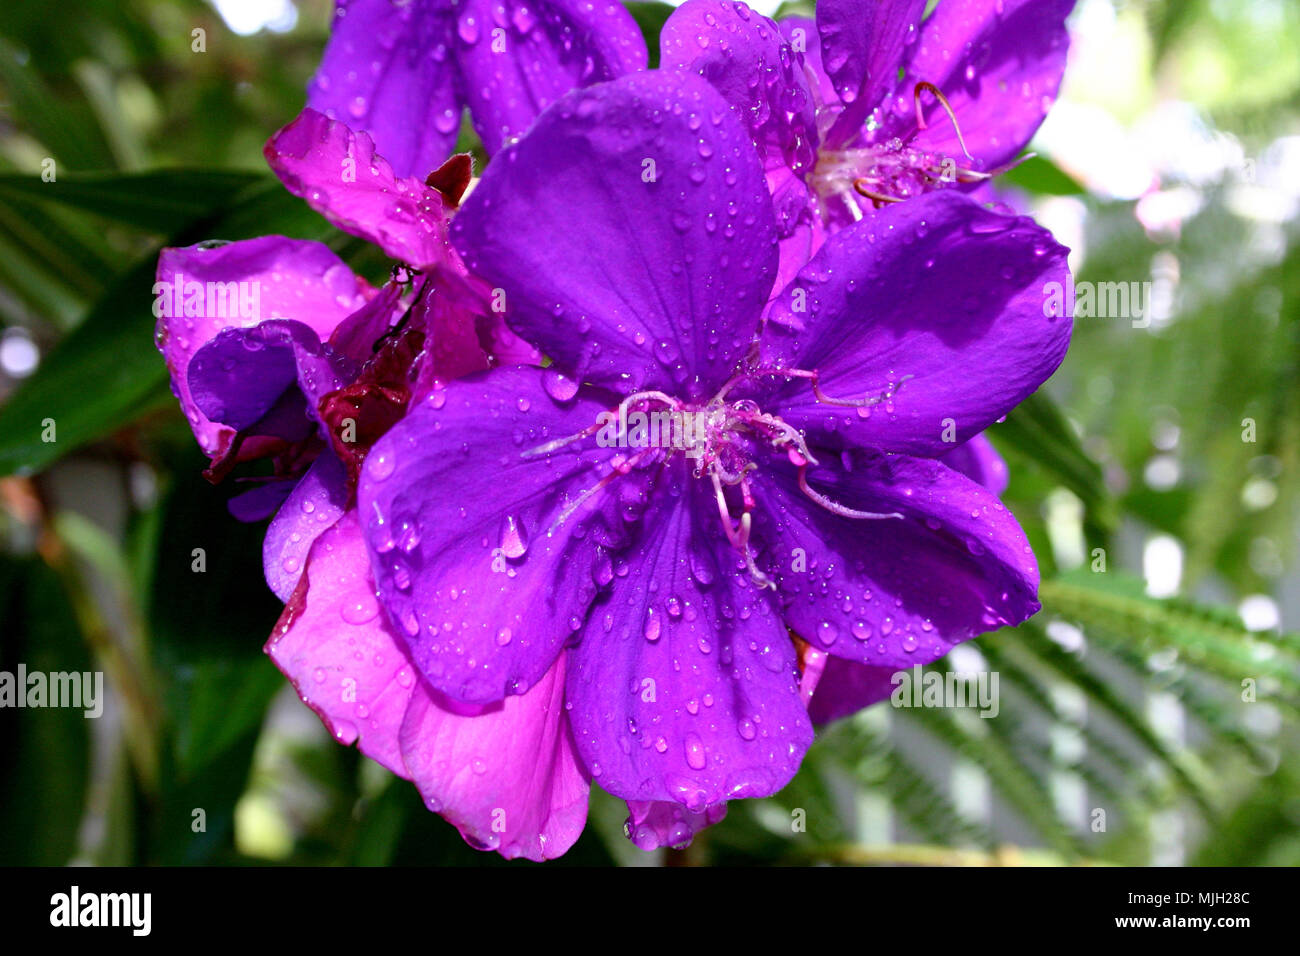 Closeup of the beautiful Tibouchina flowers (Lassiandra). Stock Photo